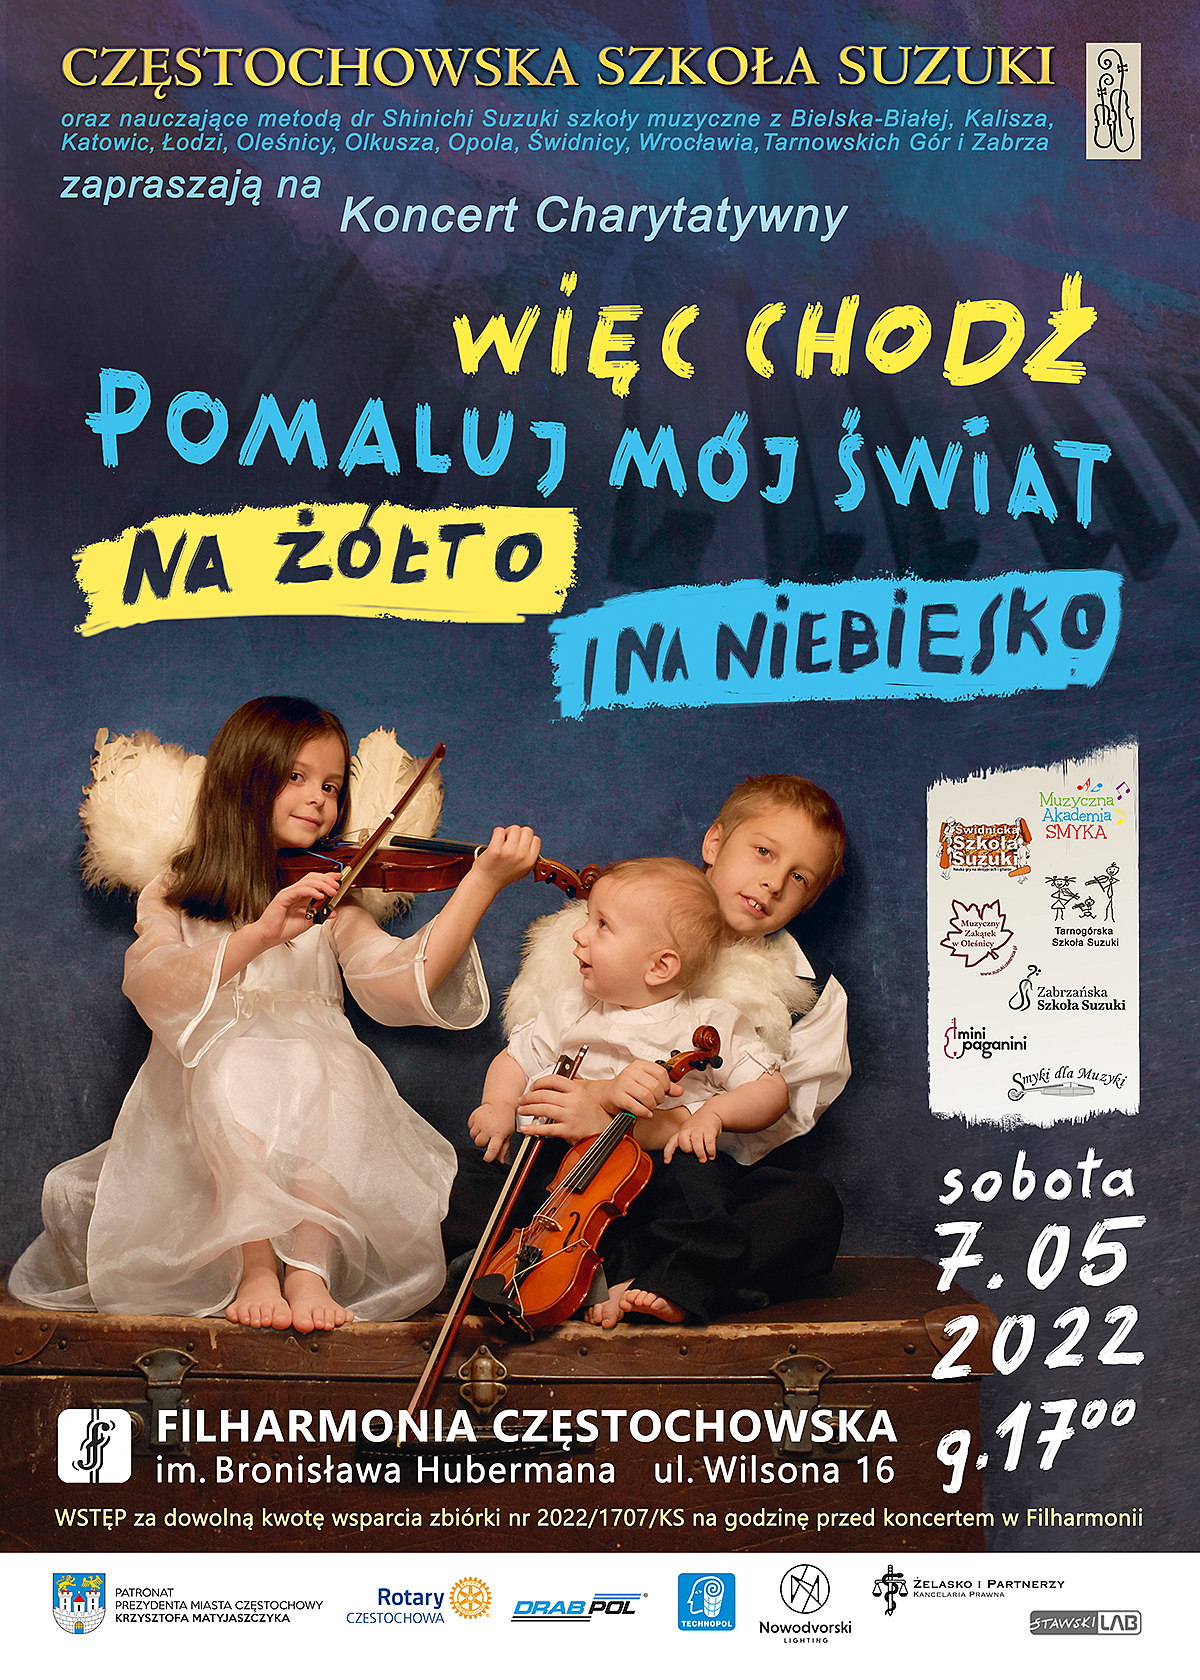 Charytatywny koncert Częstochowskiej Szkoły Suzuki. Na scenie wystąpi ponad 100 młodych artystów 2